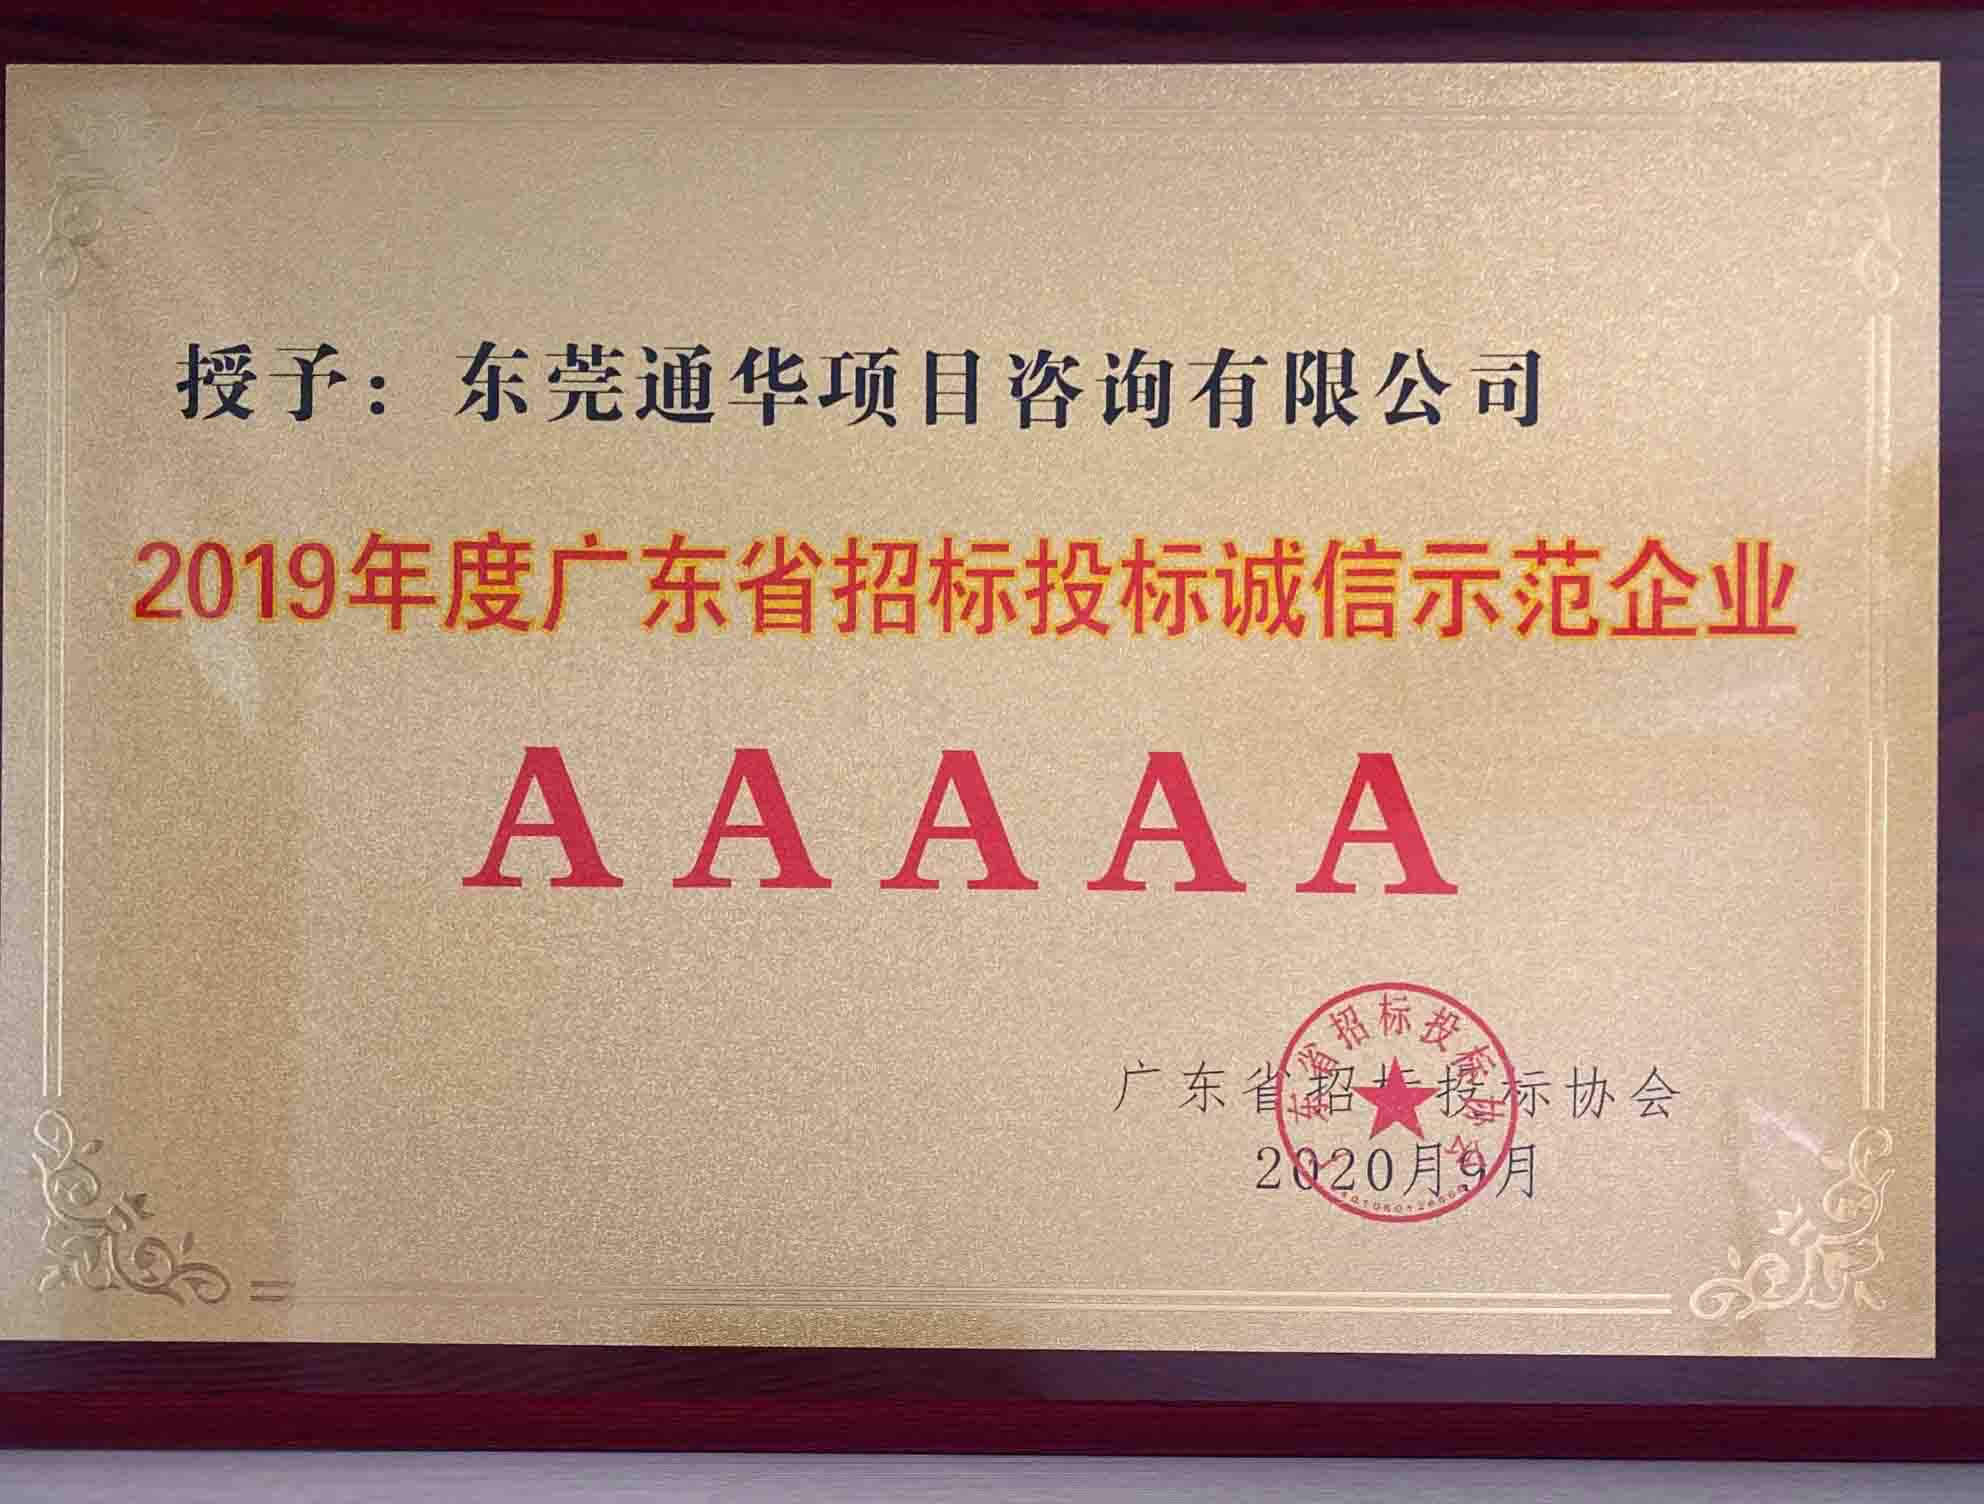 2019 年度廣東省招標投標誠信示范企業 AAAAA